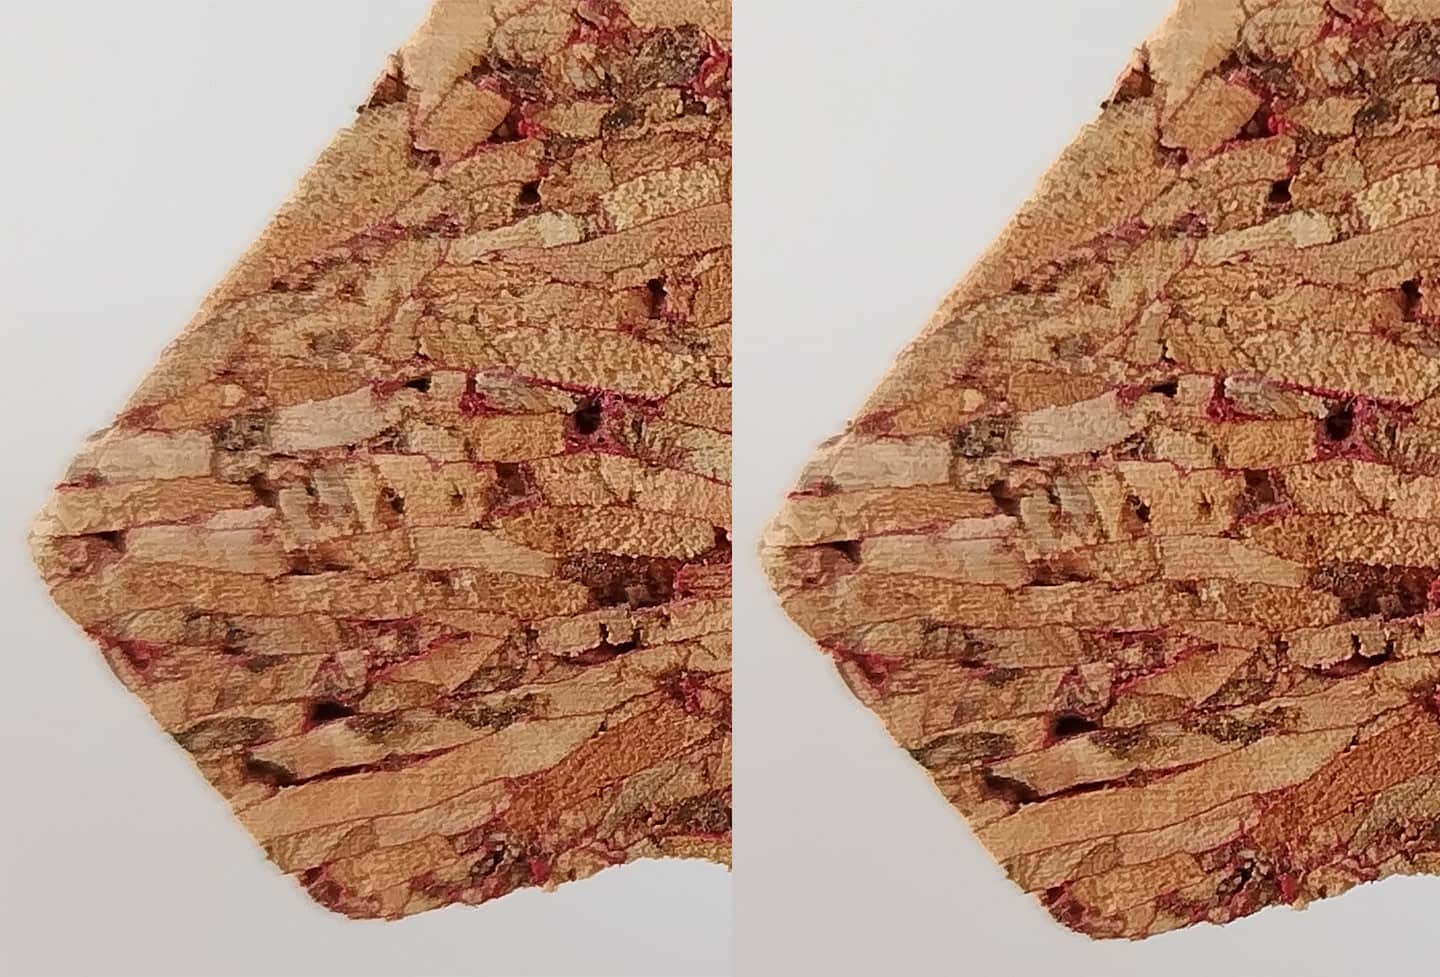 同一個軟木塞的近拍對比照，左邊是以 1,250 萬畫素拍攝（放大至 200%），右邊是以 5,000 萬畫素拍攝（放大至 100%），可以發現 5,000 萬畫素拍出來的細節紋理被記錄得更完整。